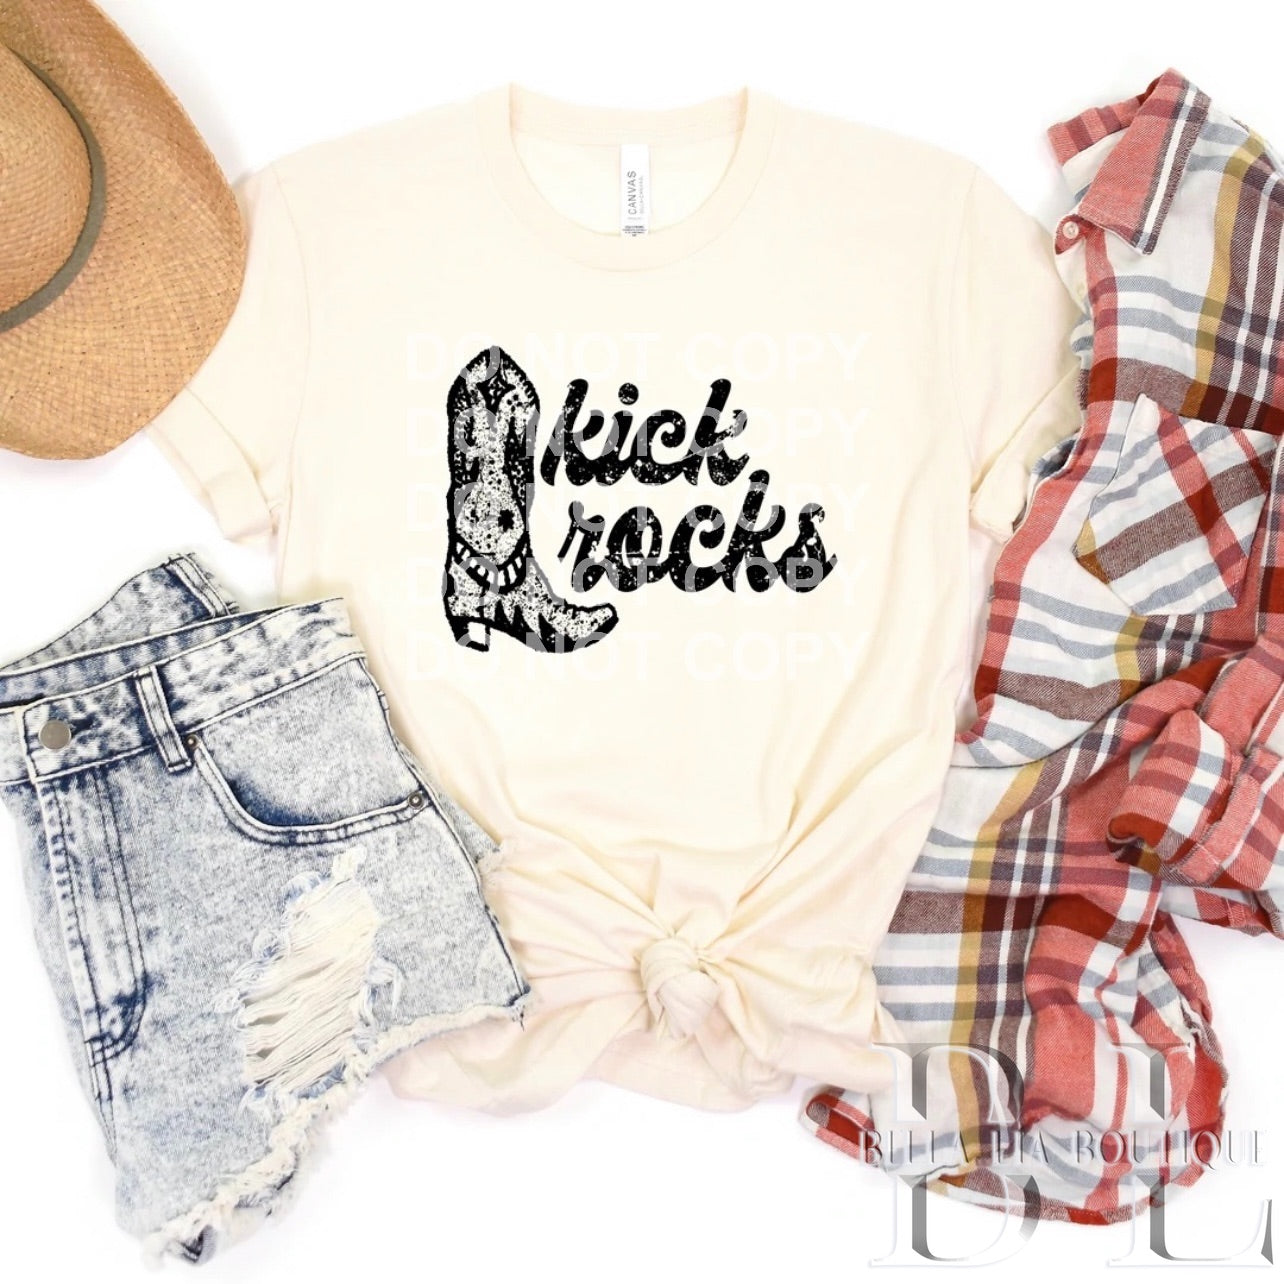 Kick Rocks Graphic Tee or Sweatshirt - Bella Lia Boutique